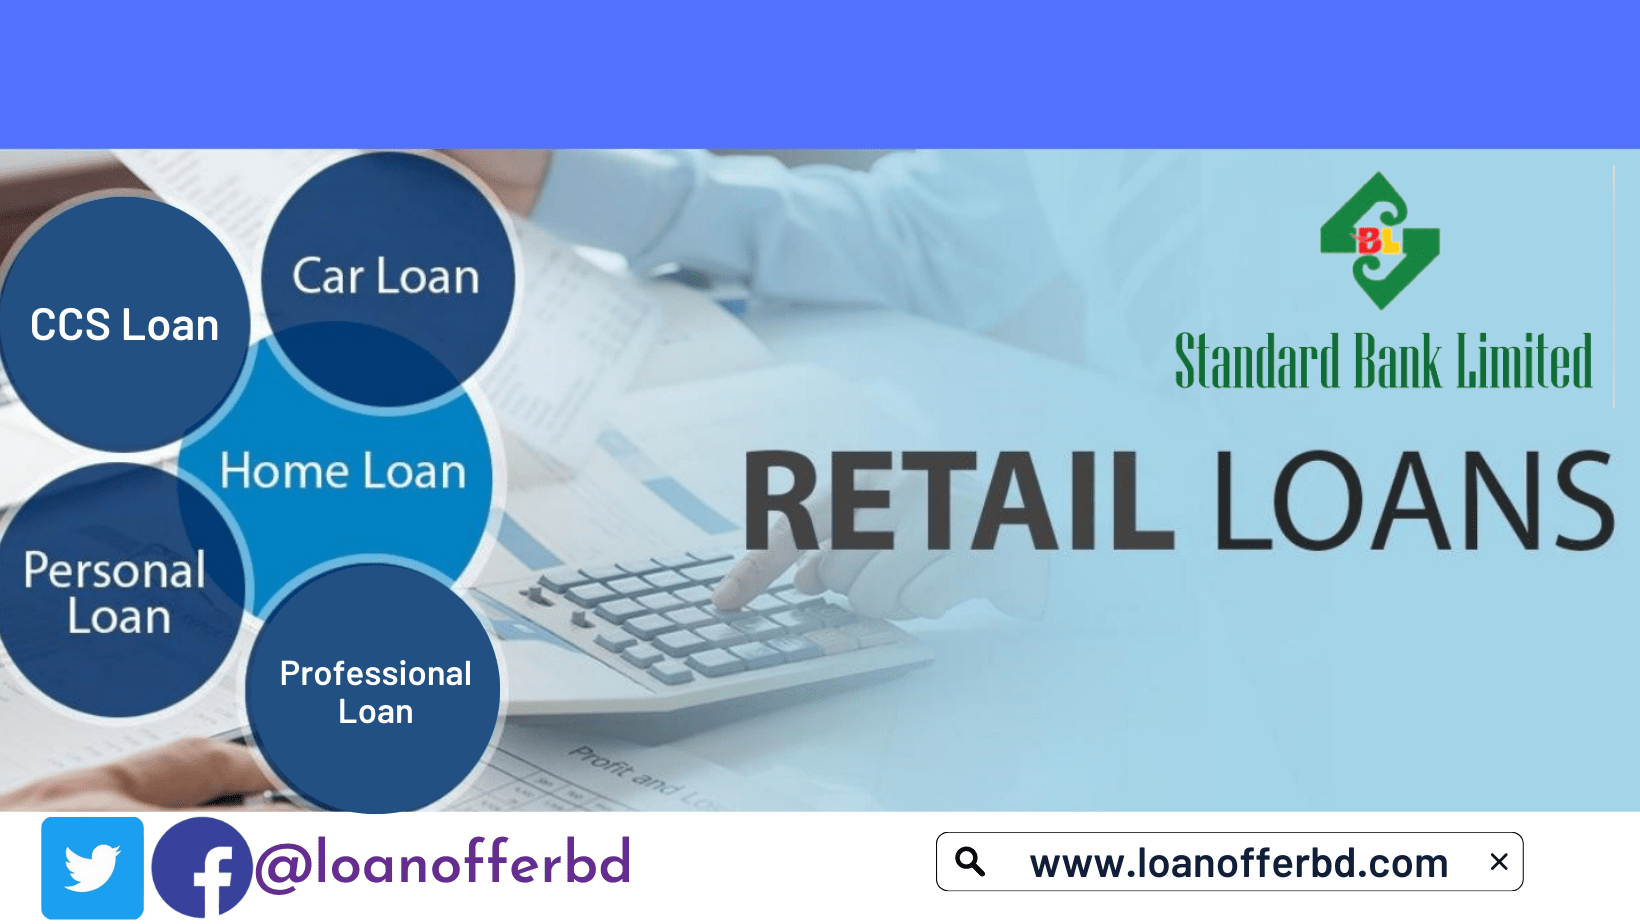 standard-bank-loan-product-loanofferbd-